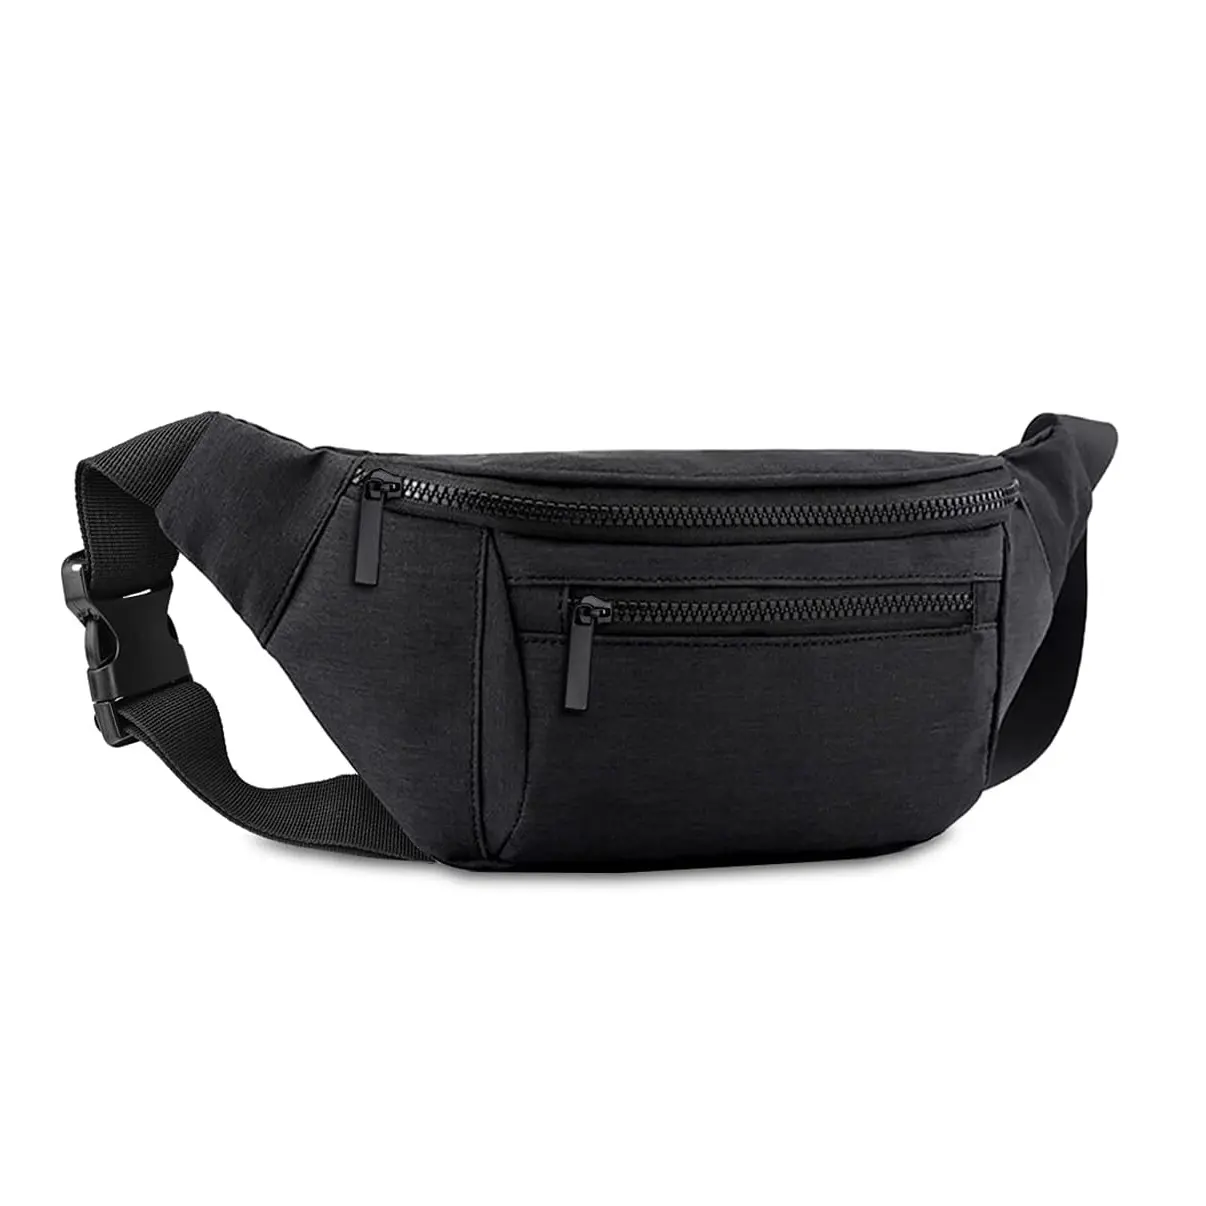 Bolsa de cintura crossbody para homens e mulheres, bolsa de viagem grande e conveniente para viagens, caminhadas, corrida e caminhadas